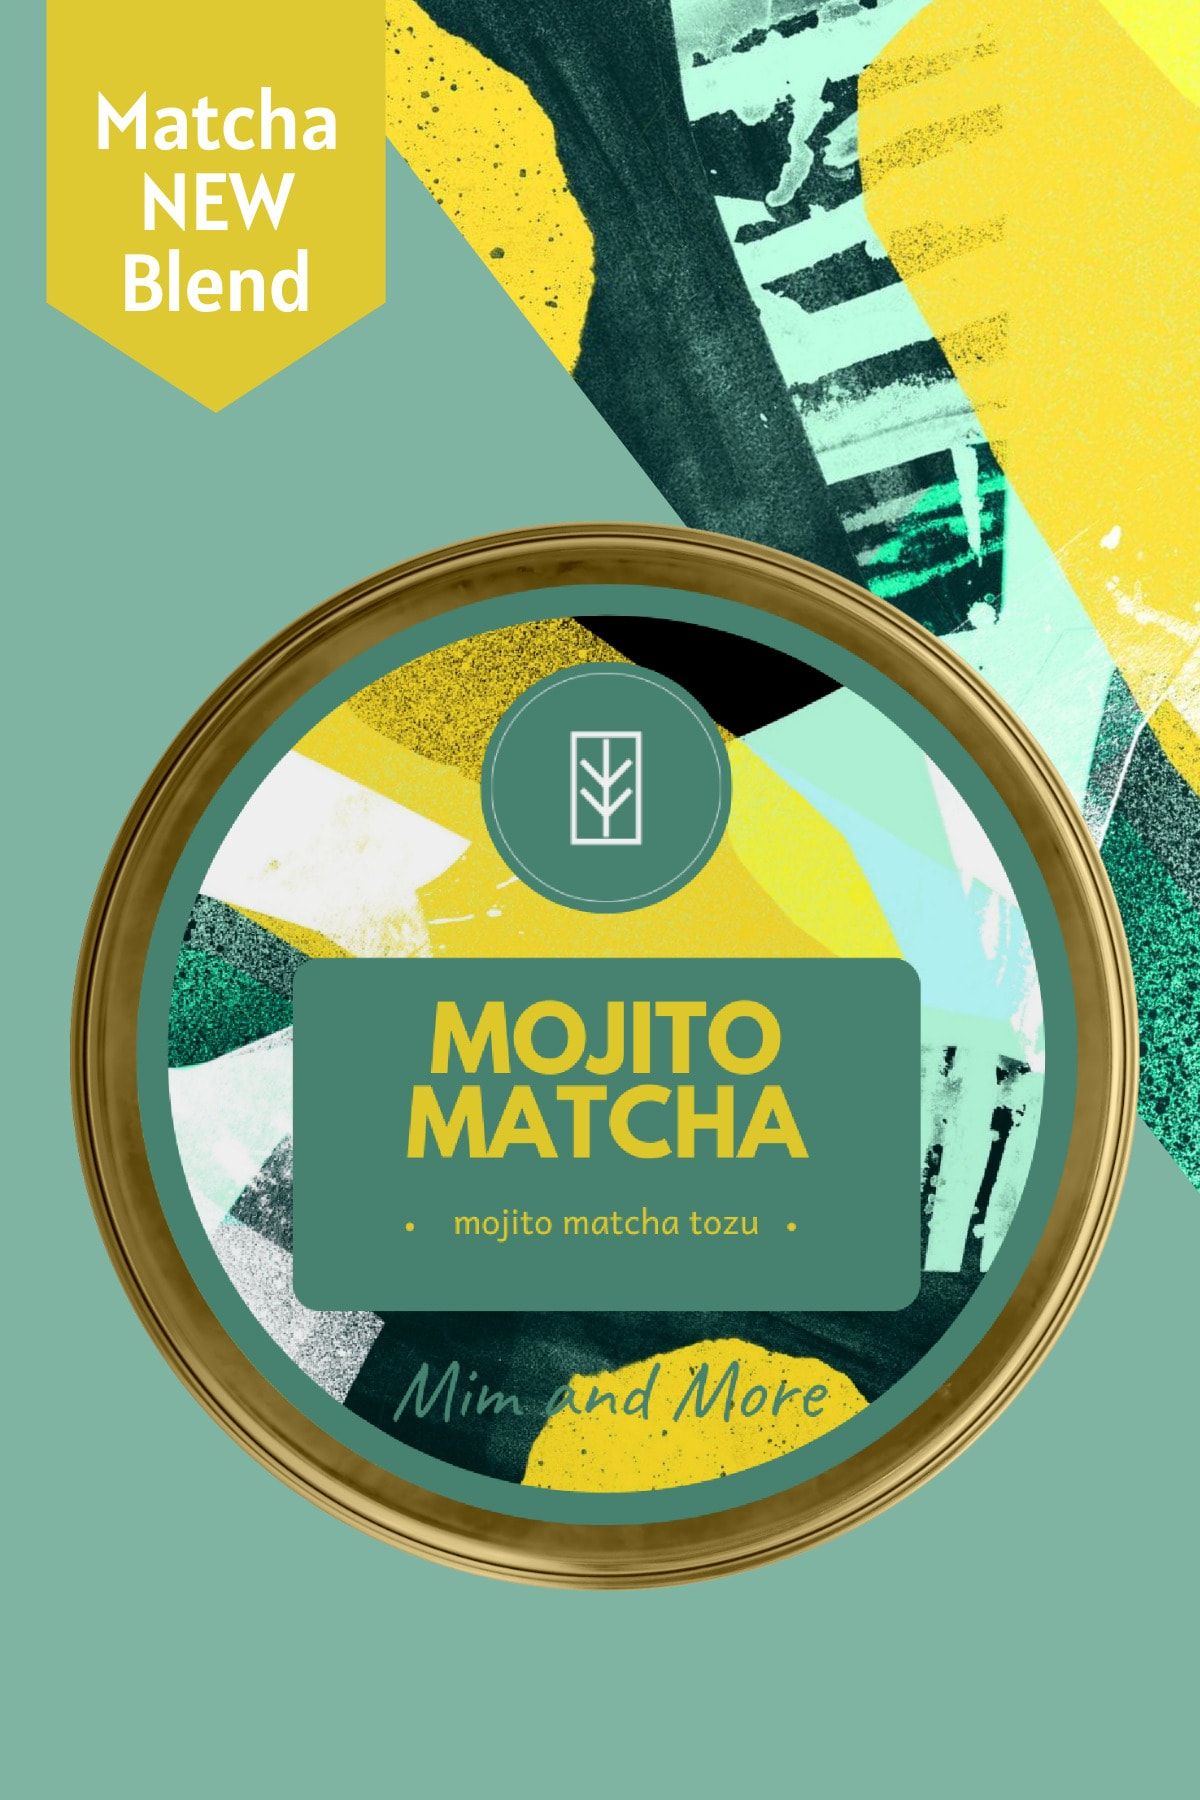 Mim and More Mojito Matcha - Mojito Matcha